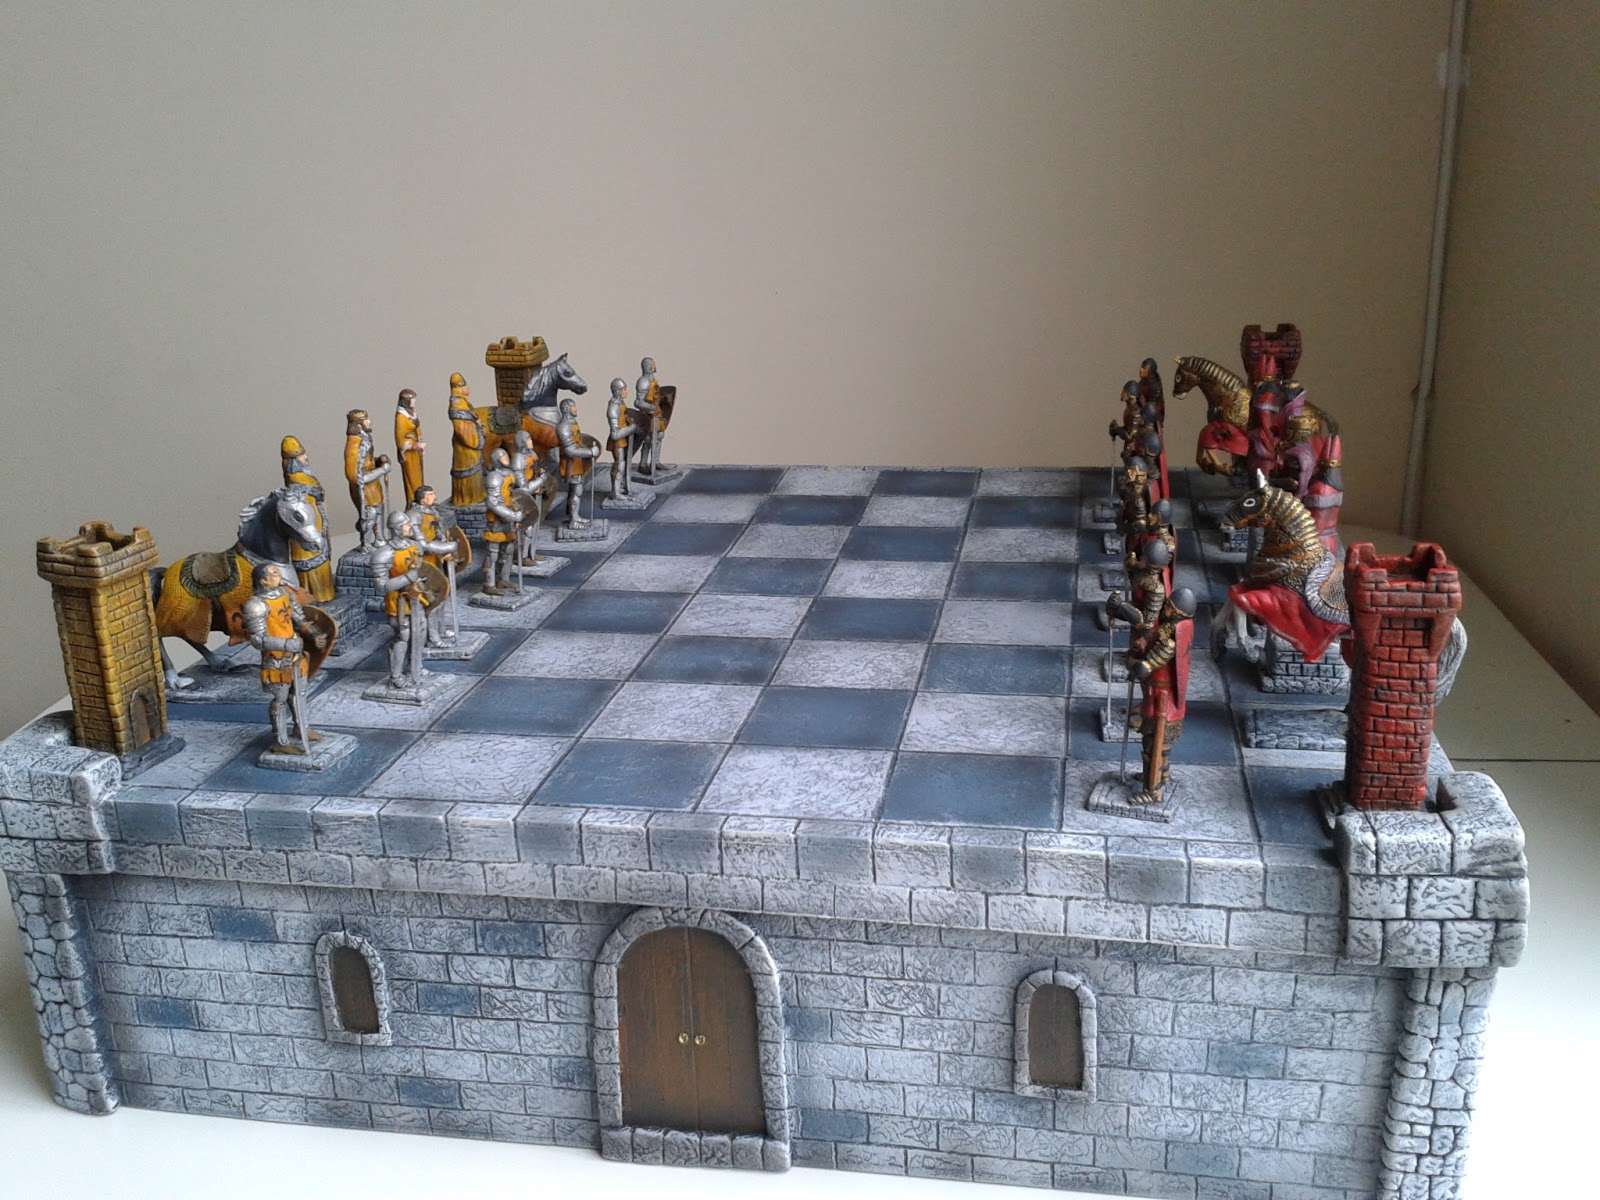 Tabuleiro de xadrez Medieval completo com caixa ara guardar as